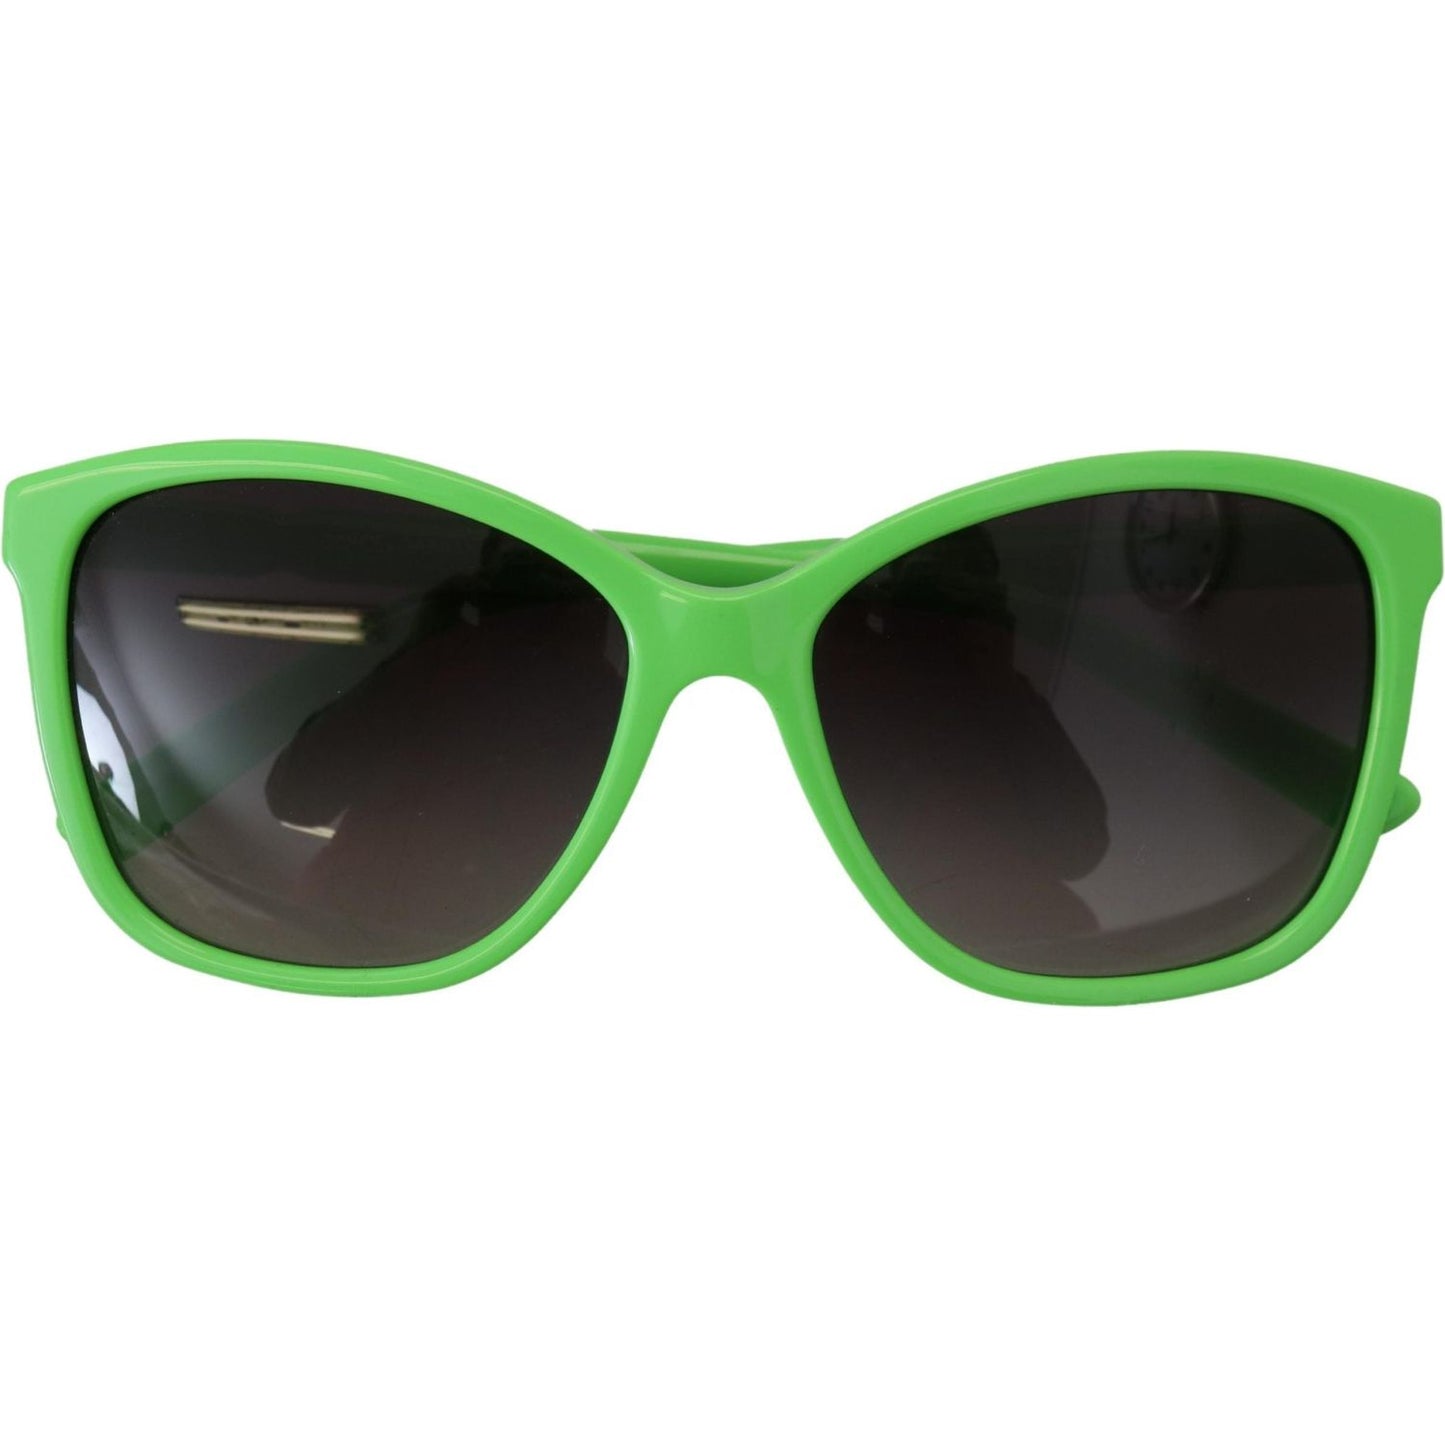 Dolce & Gabbana Chic Green Acetate Round Sunglasses green-acetate-frame-round-shades-dg4170pm-sunglasses